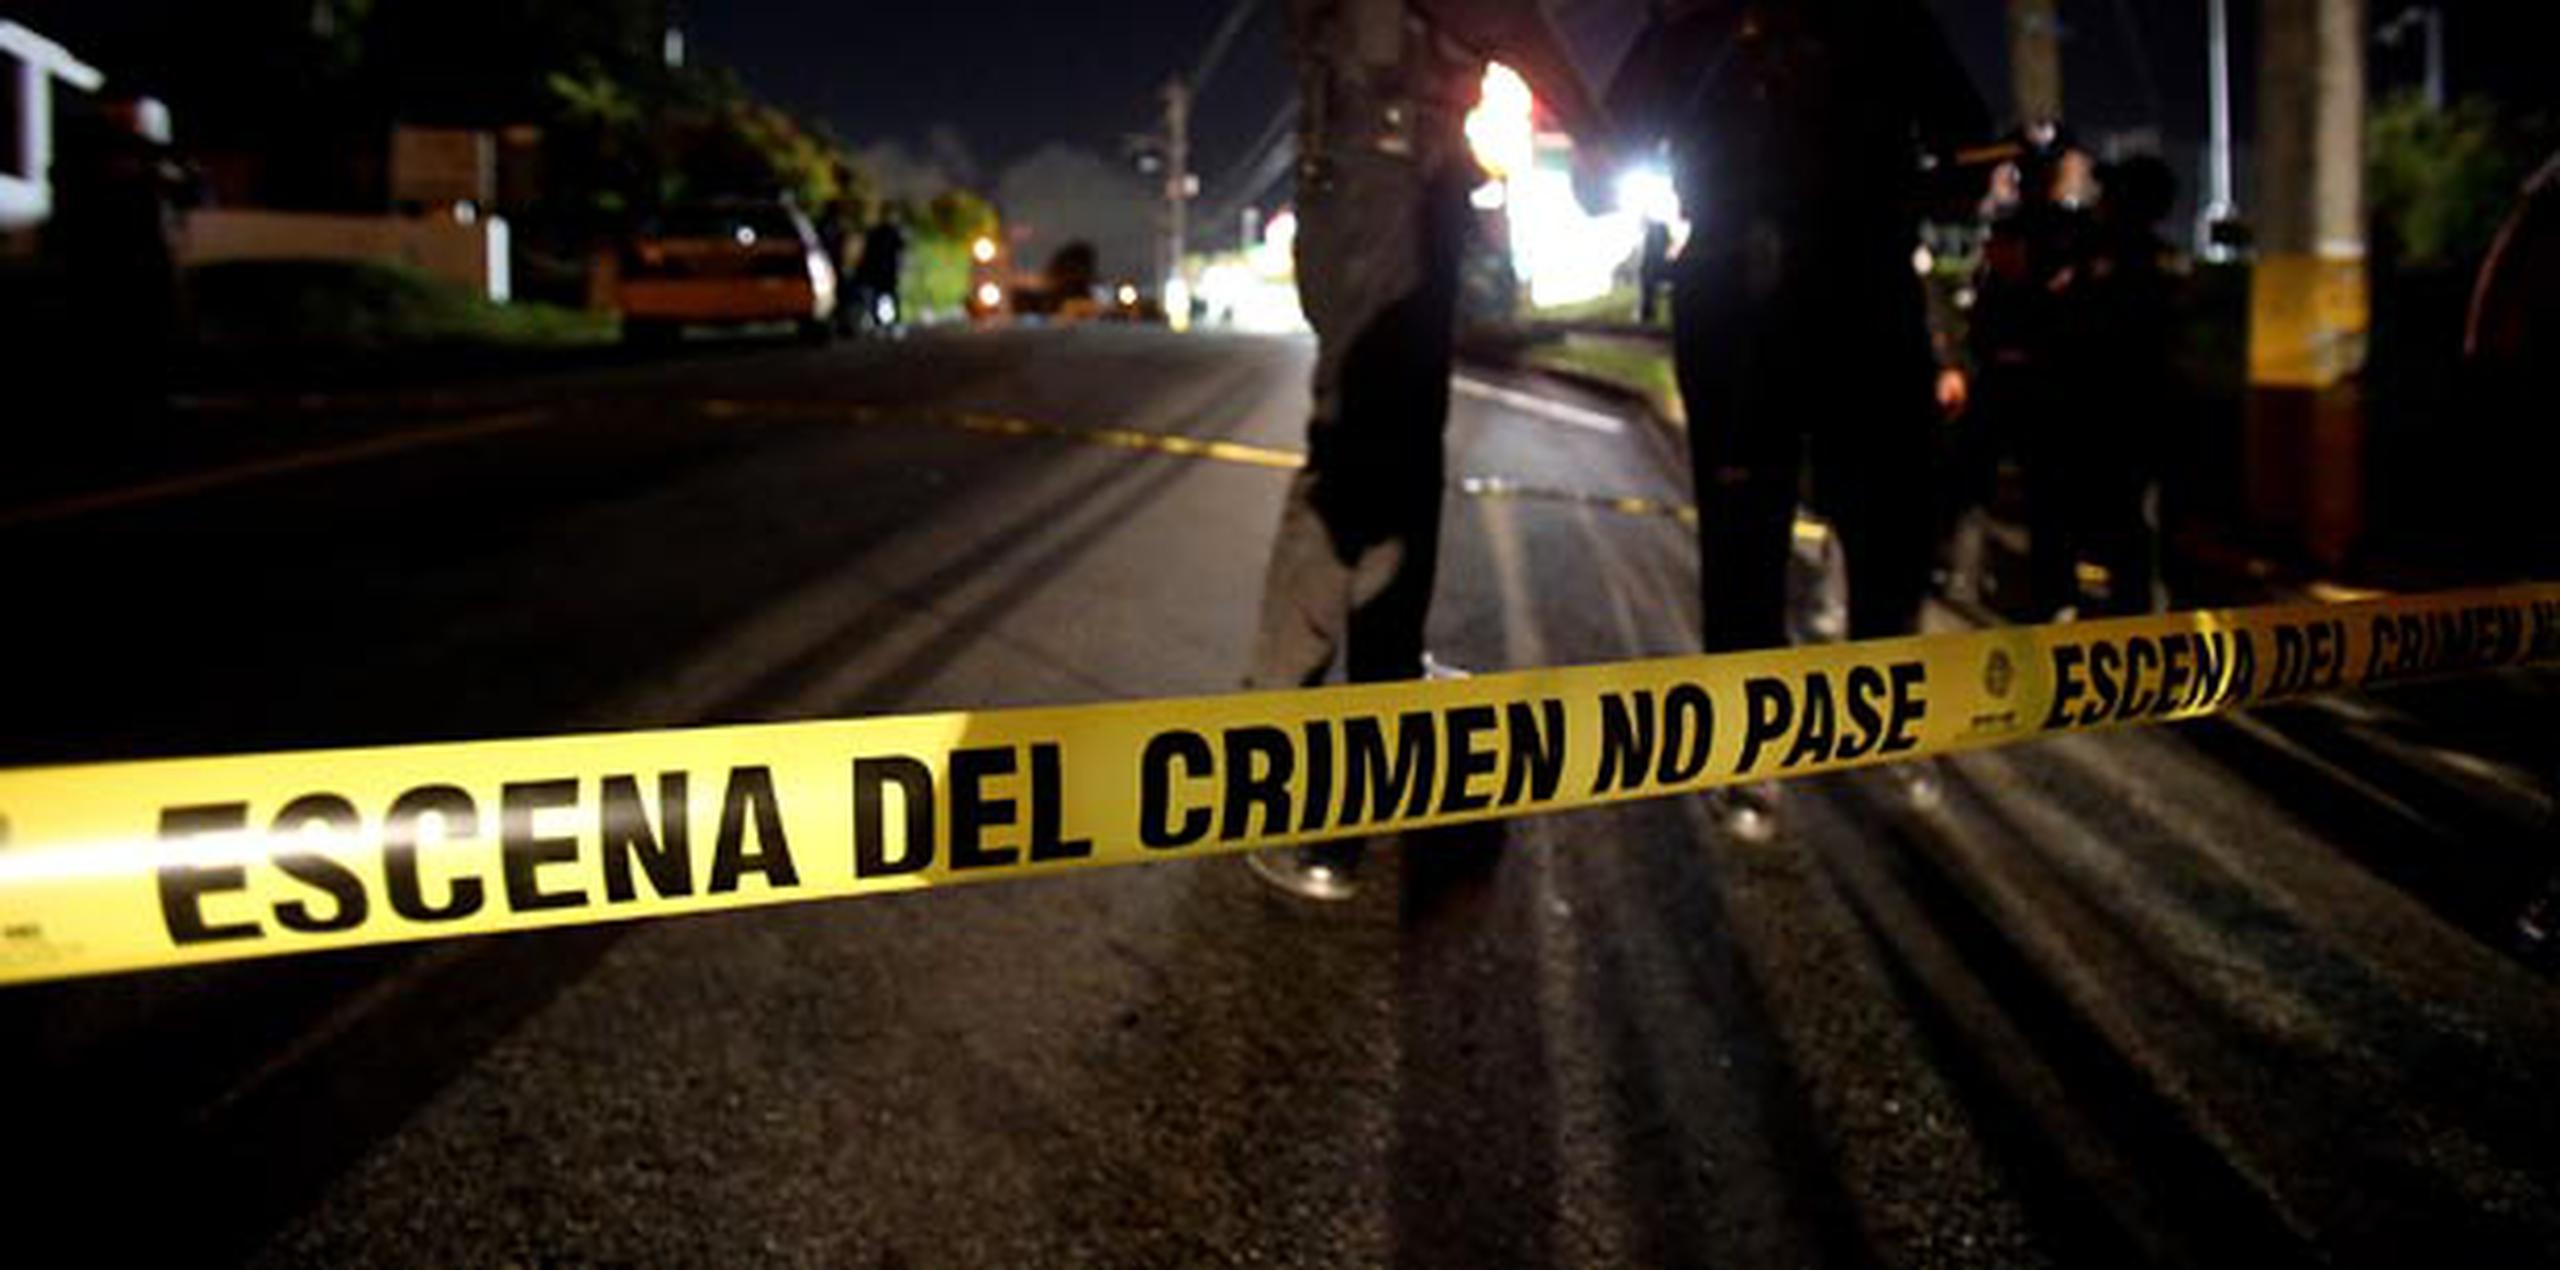 El crimen es investigado por agentes de la División de Homicidios en Fajardo. (Archivo)